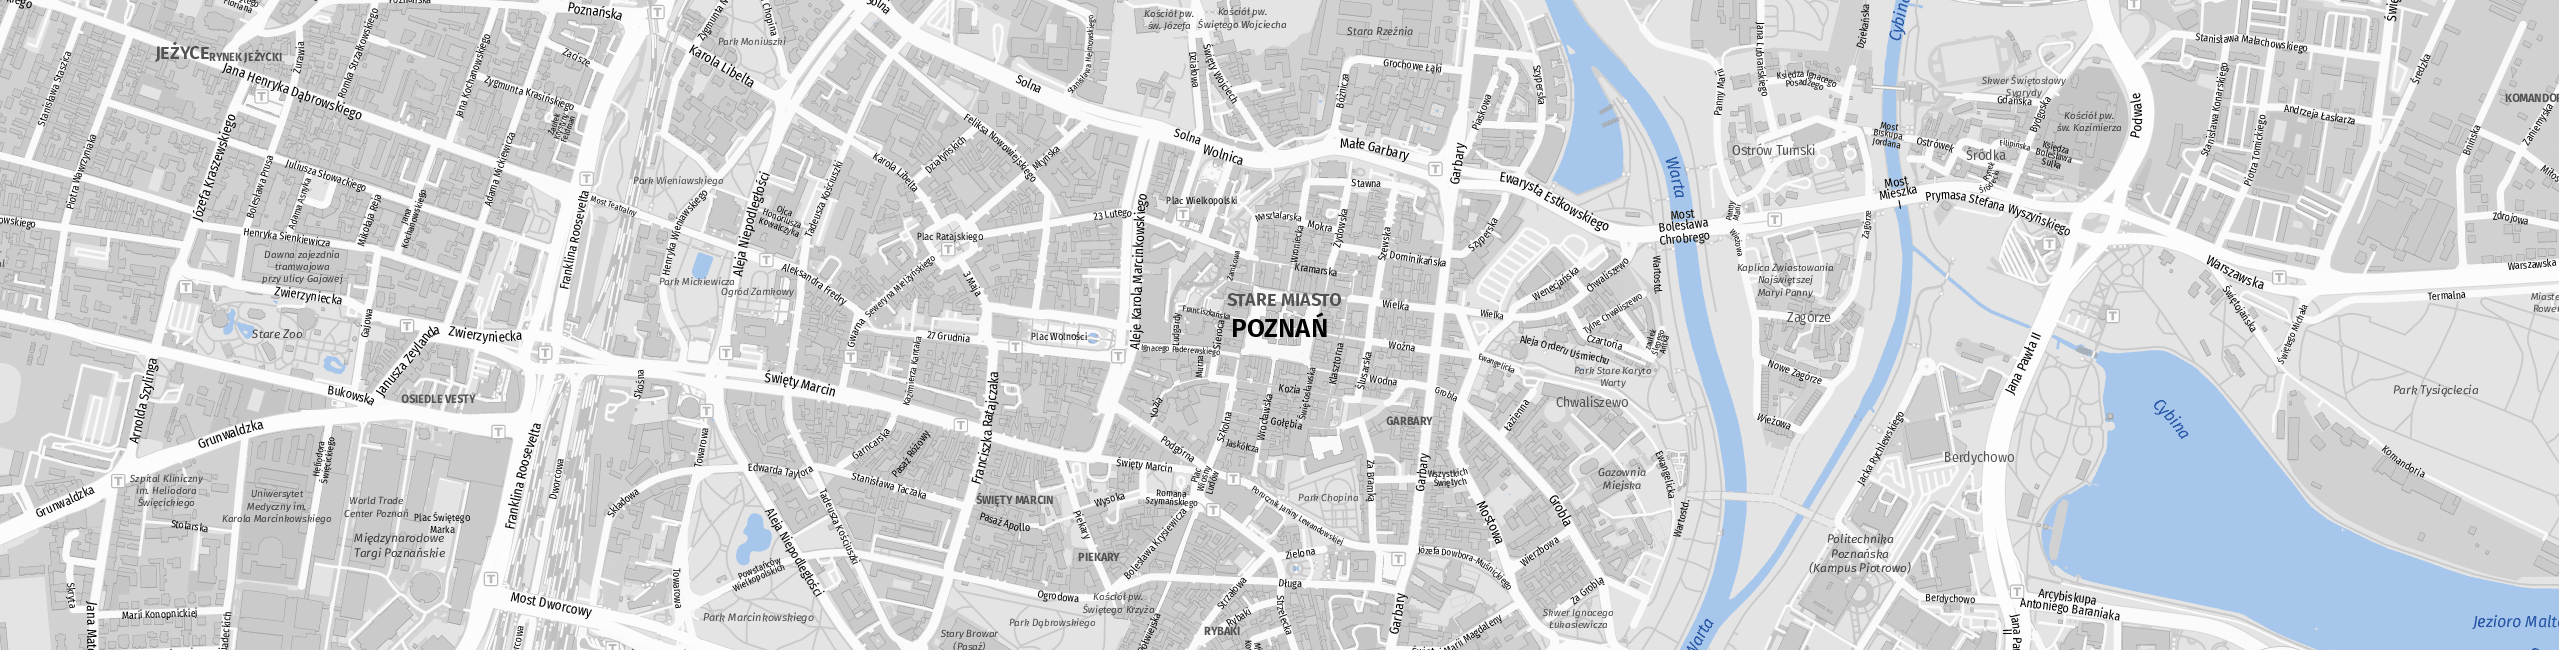 Stadtplan Poznań zum Downloaden.